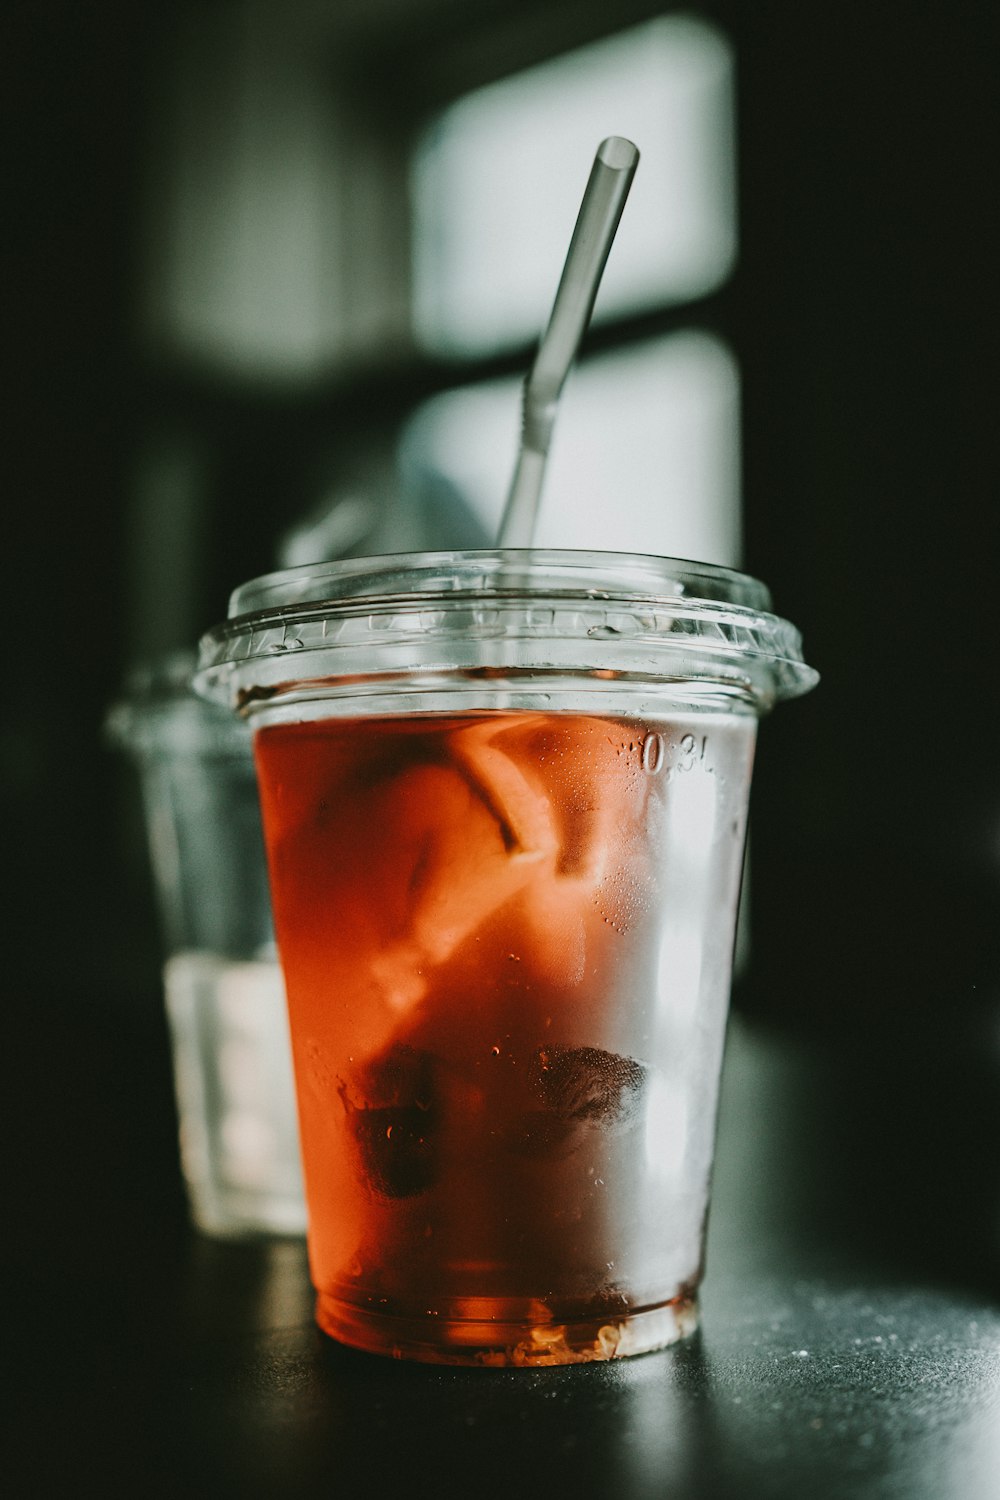 赤い液体が入った透明な使い捨てカップのセレクティブフォーカス写真